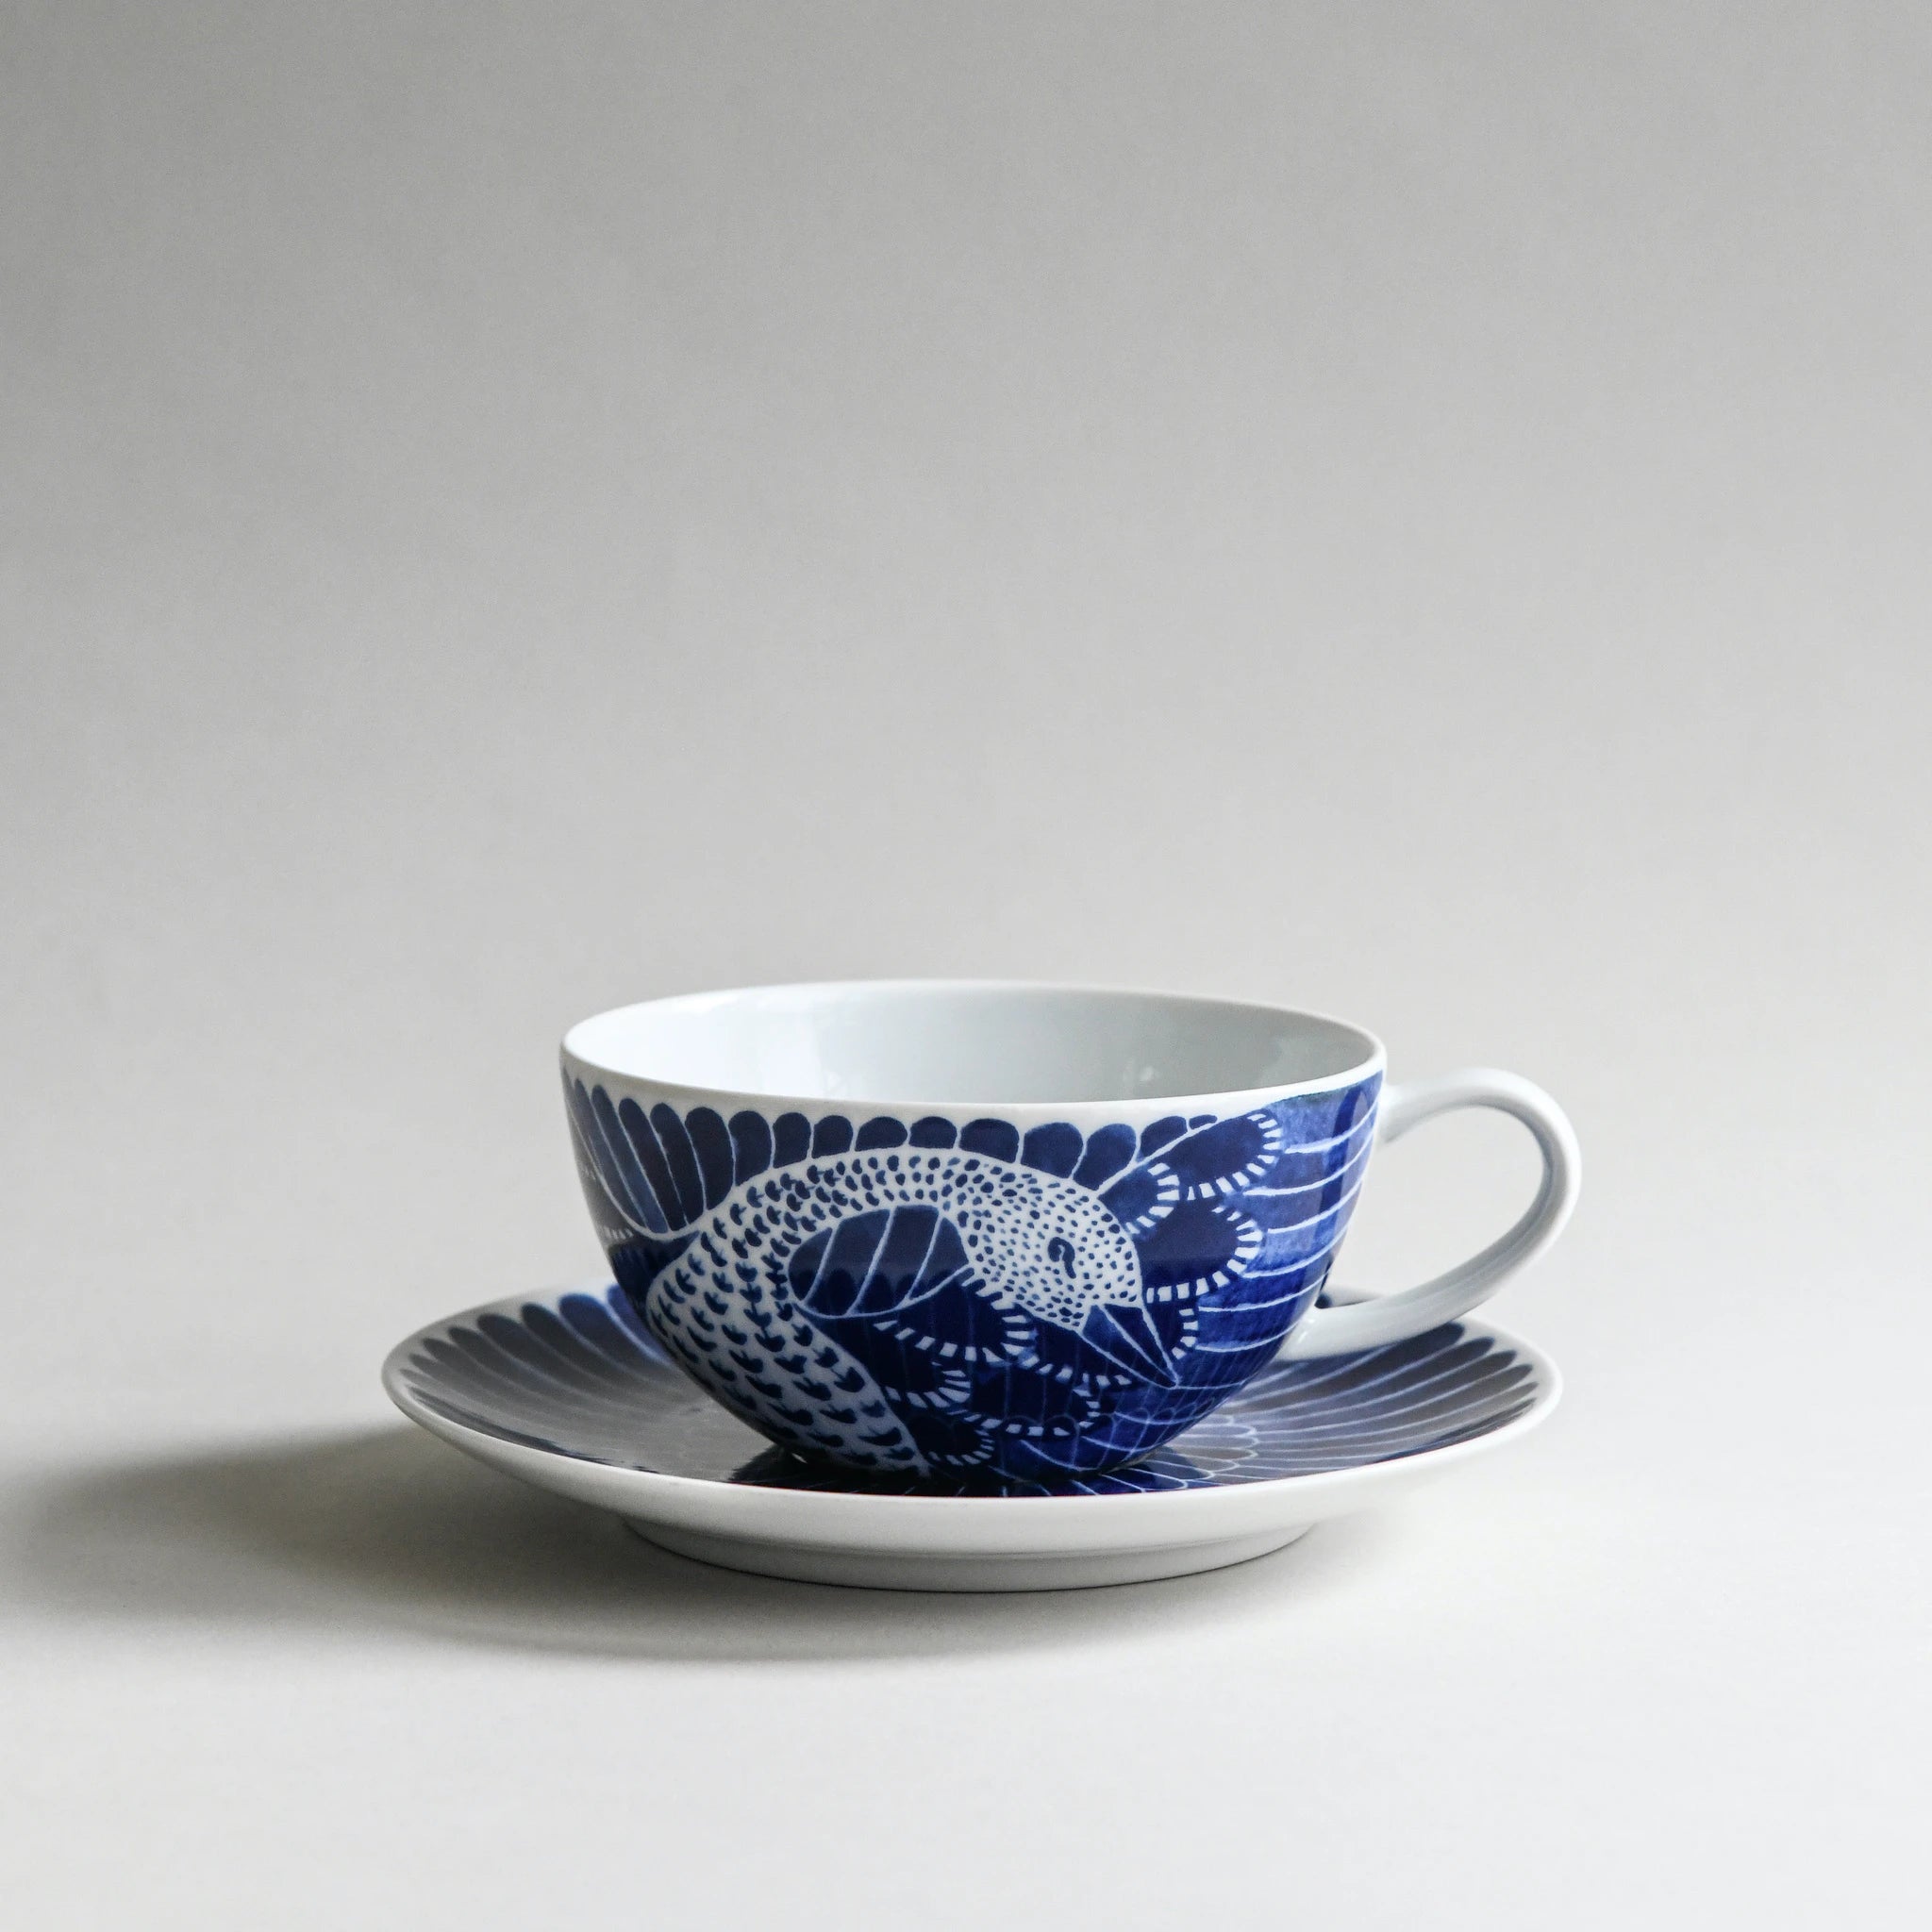 Selma tea cup with saucer 34 cl